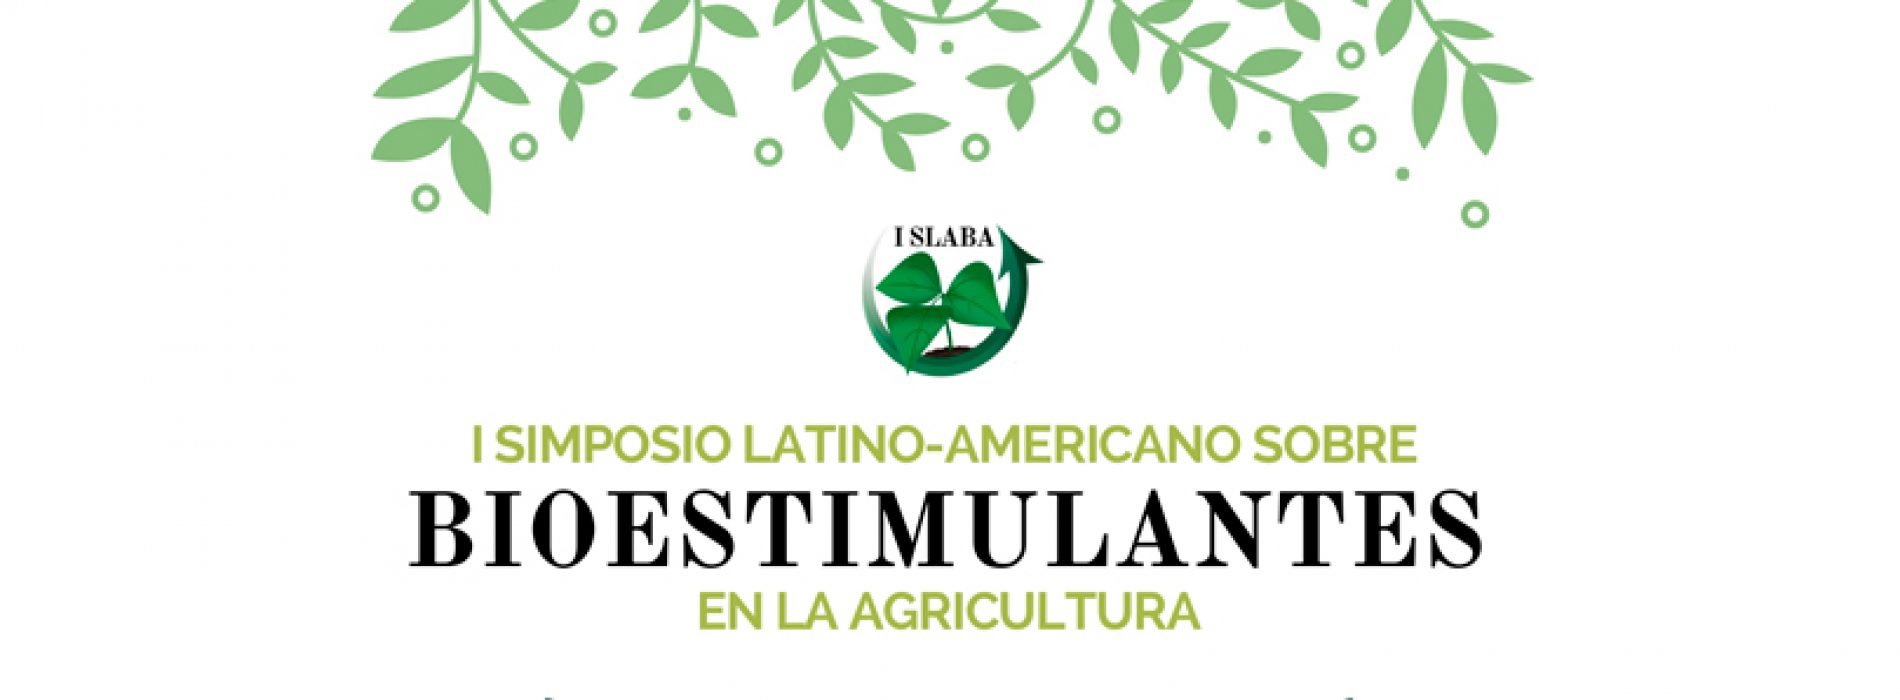 Latin American Symposium on Bioestimulantes in agriculture